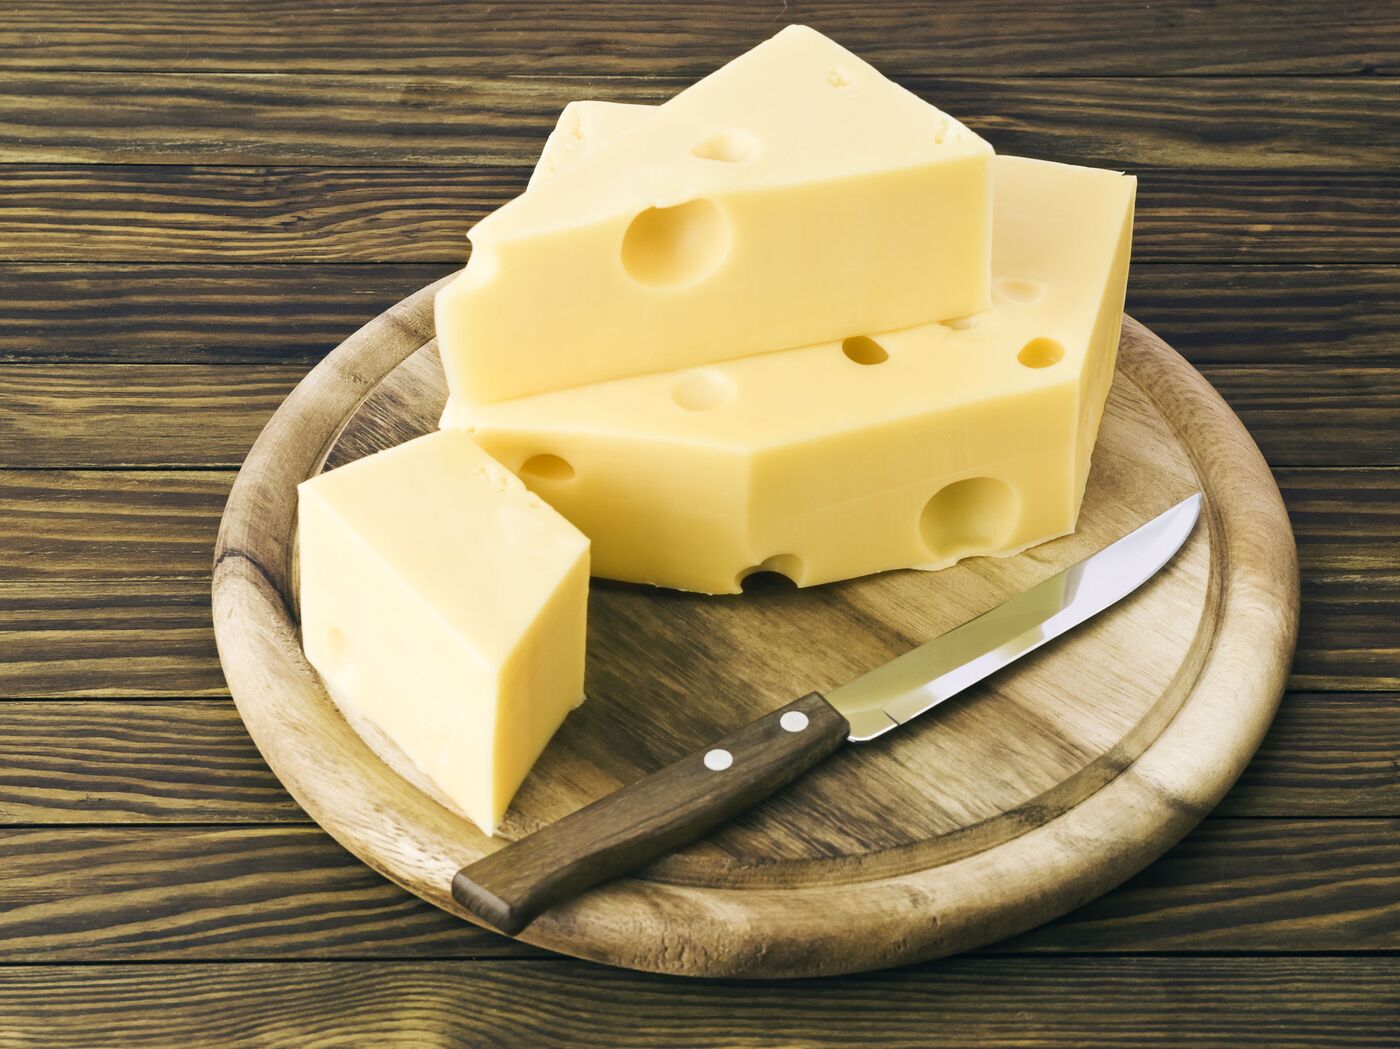 خبير يحذر من تناول الجبن بشكل يومي ويحدد الكمية المخصصة - 12.01.2022,  سبوتنيك عربي